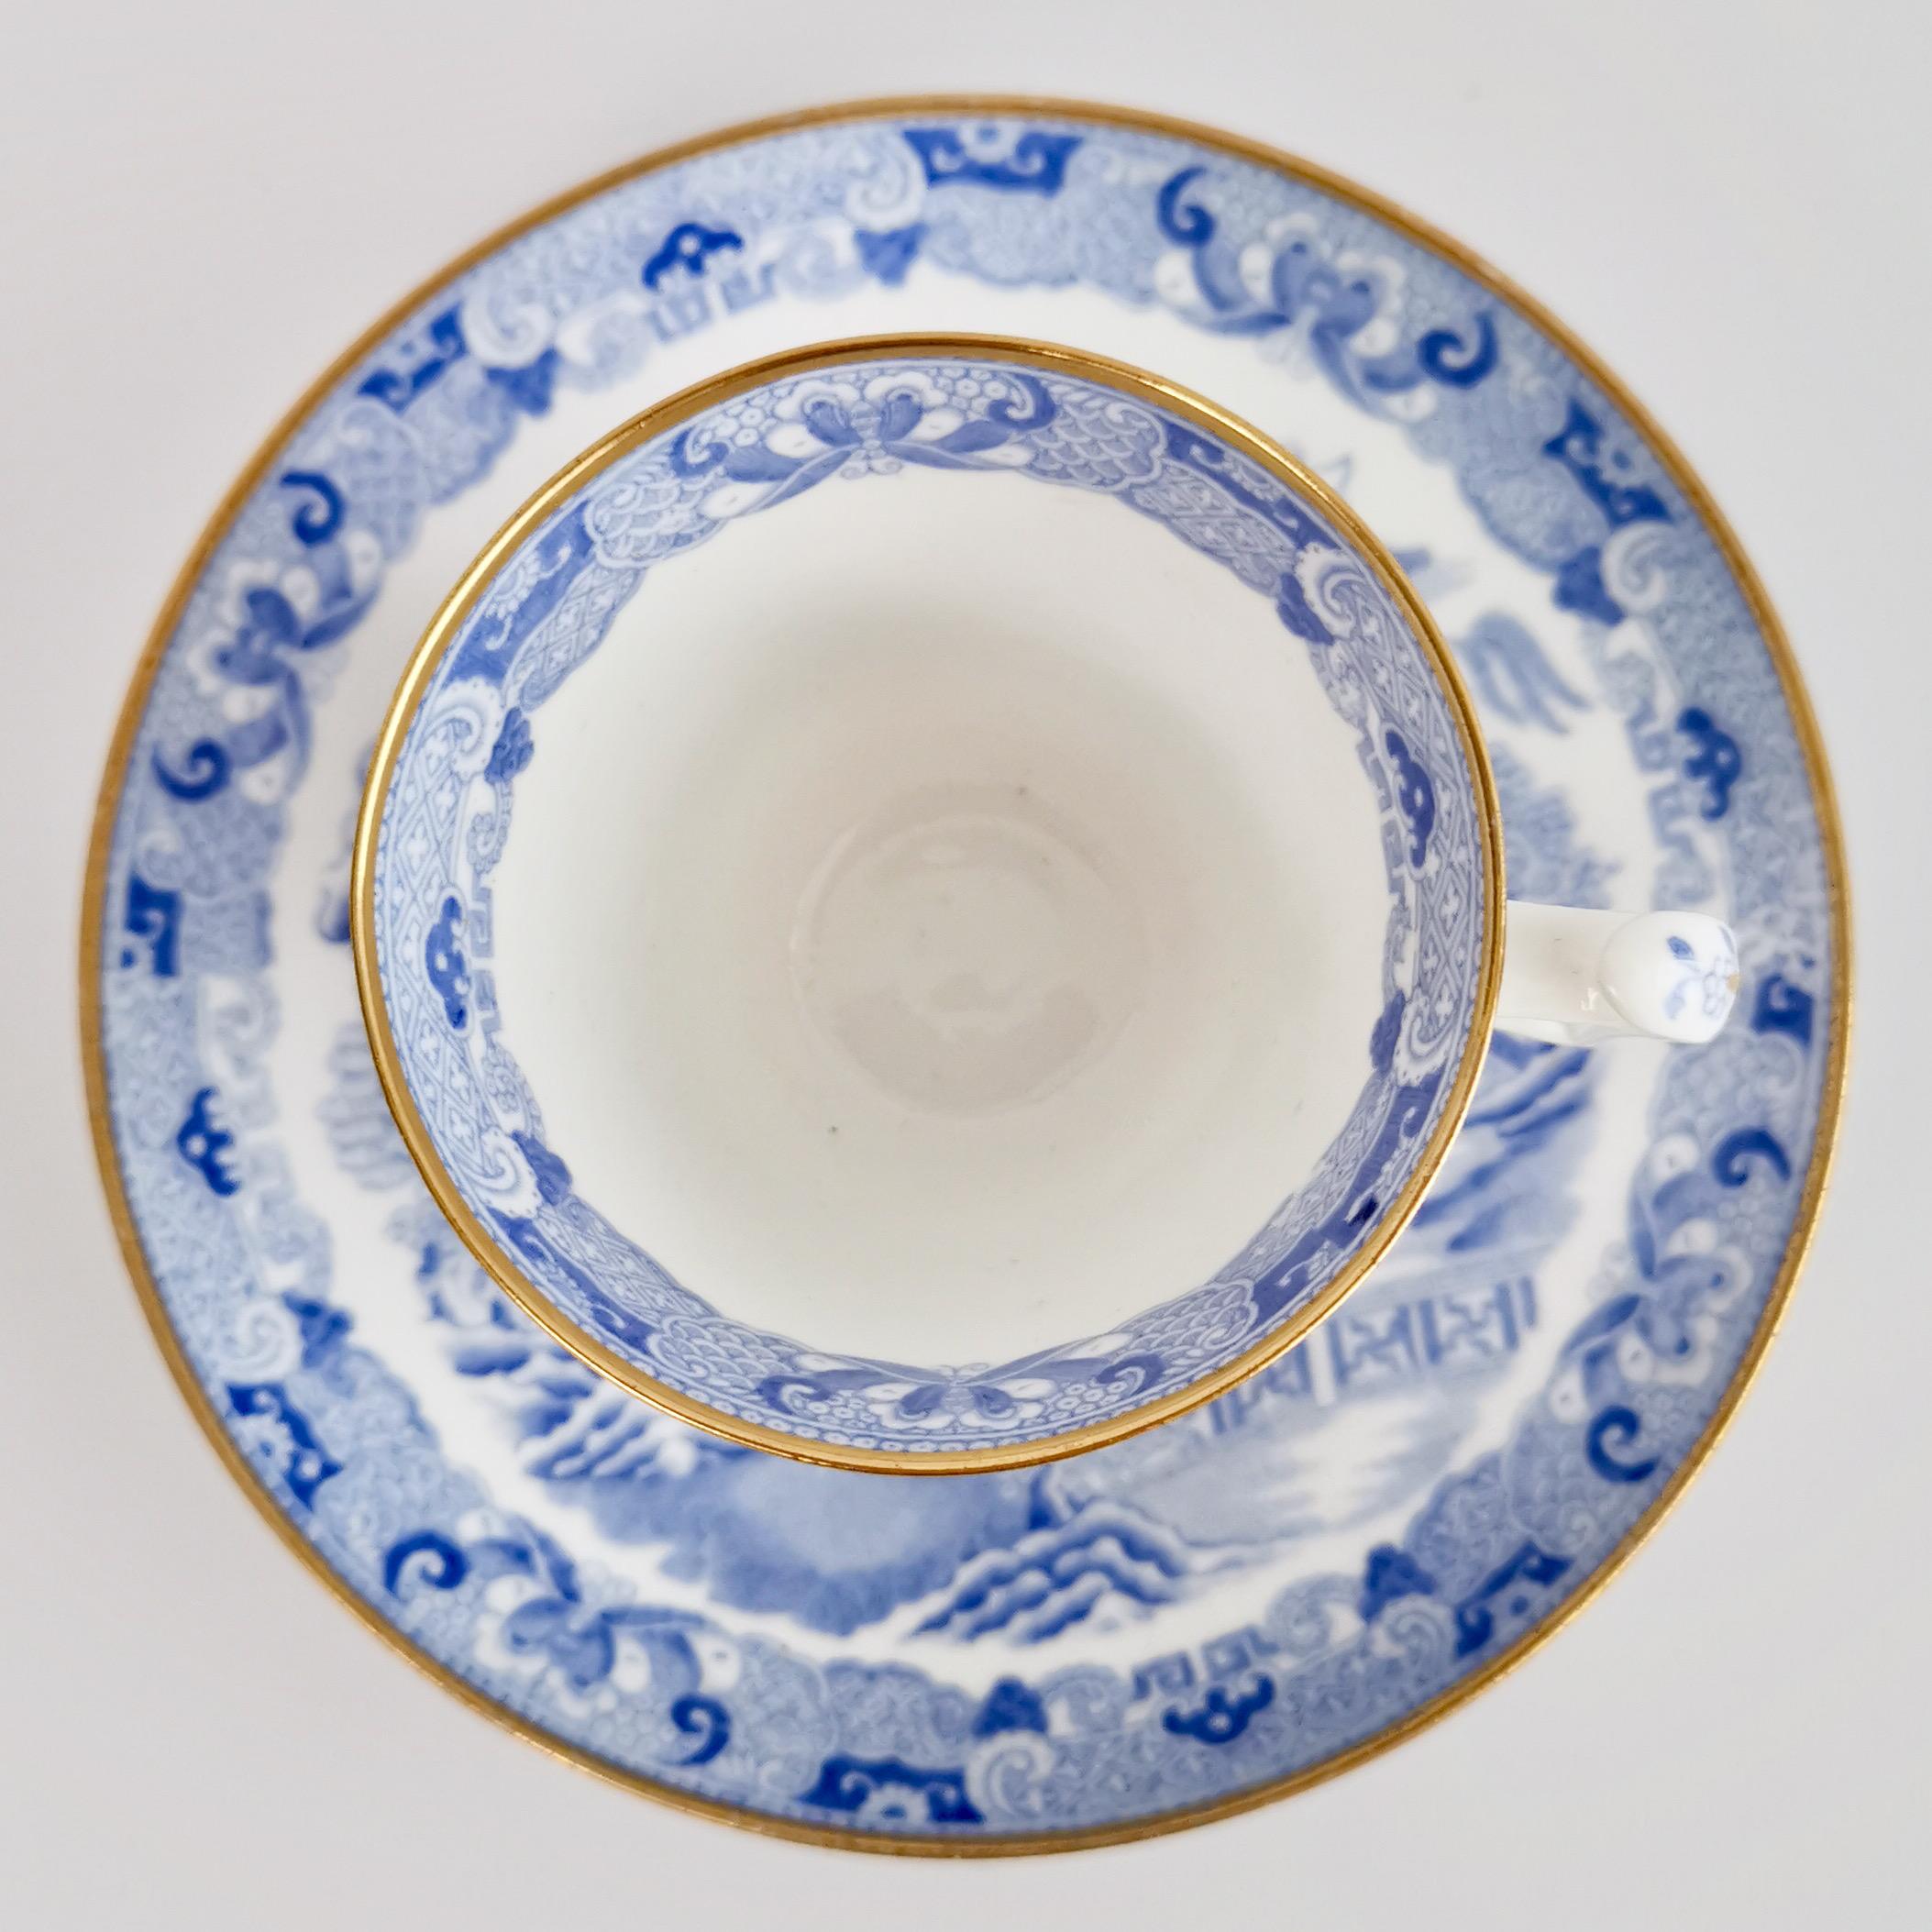 Spode Porcelain Teacup Trio, Brosely Pagoda Blue and White Transfer, ca 1815 2